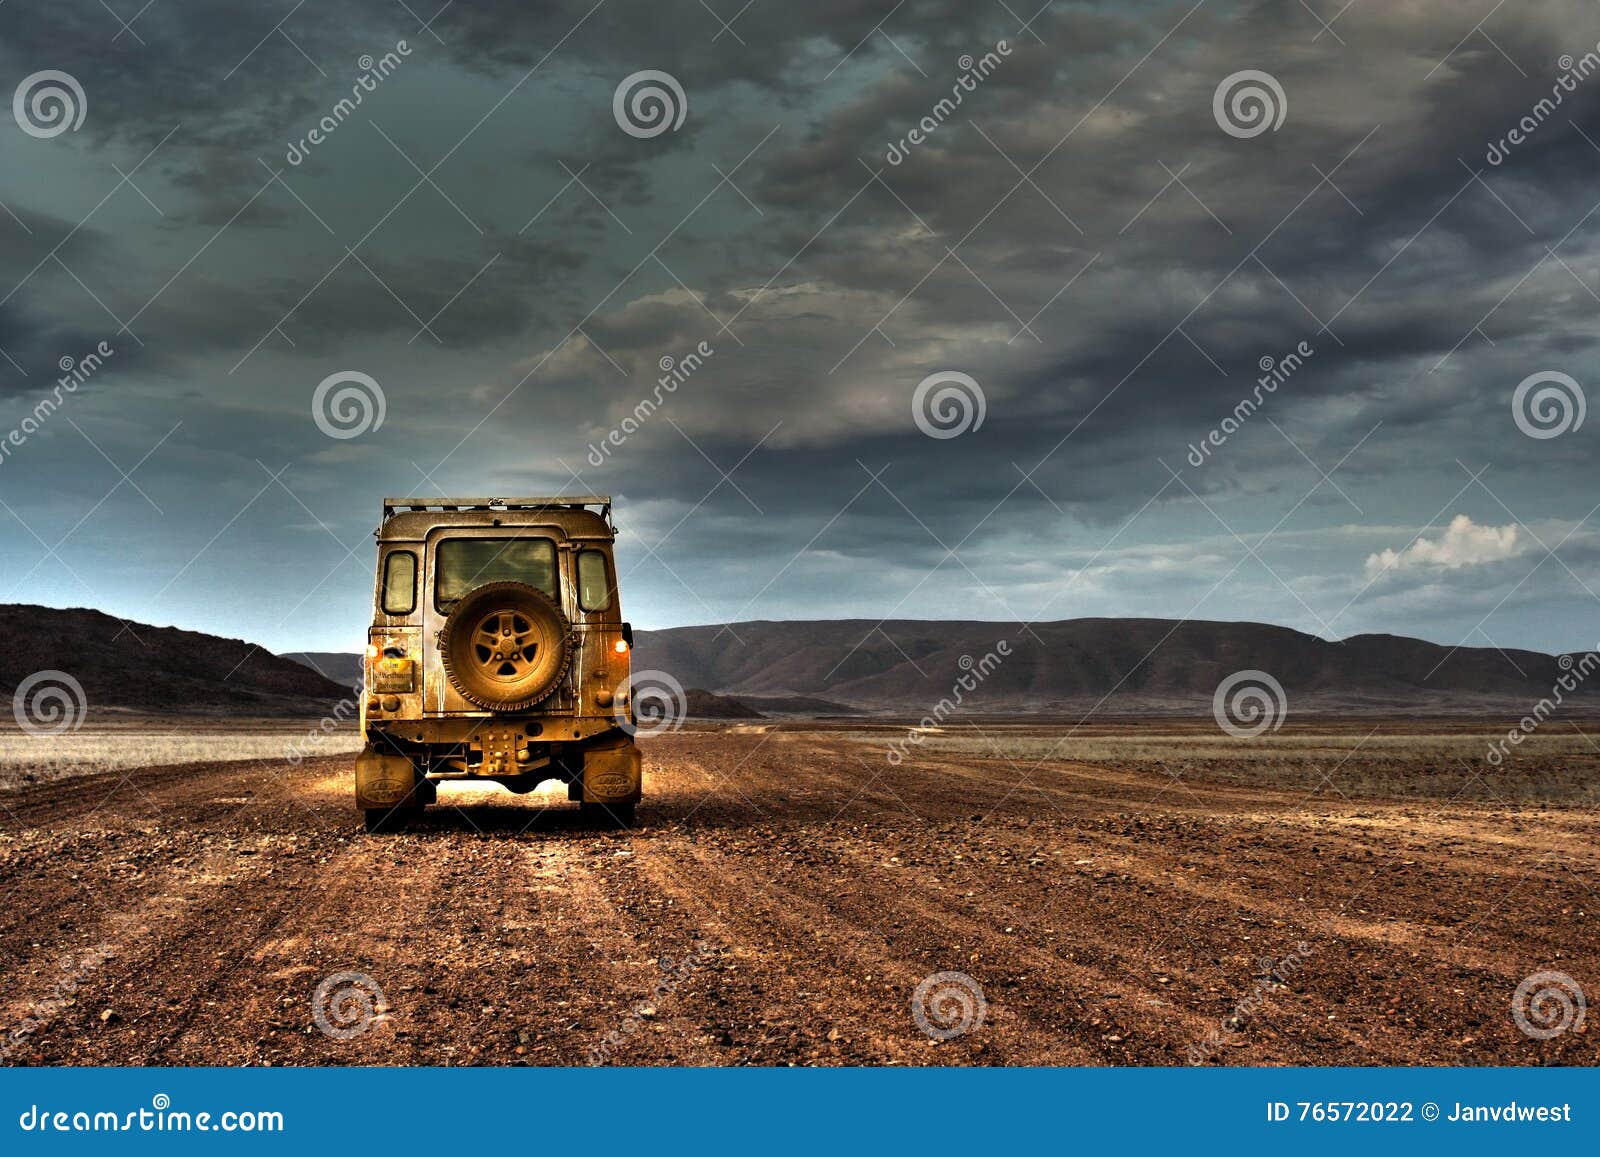 land rover defender on deserted road at dusk